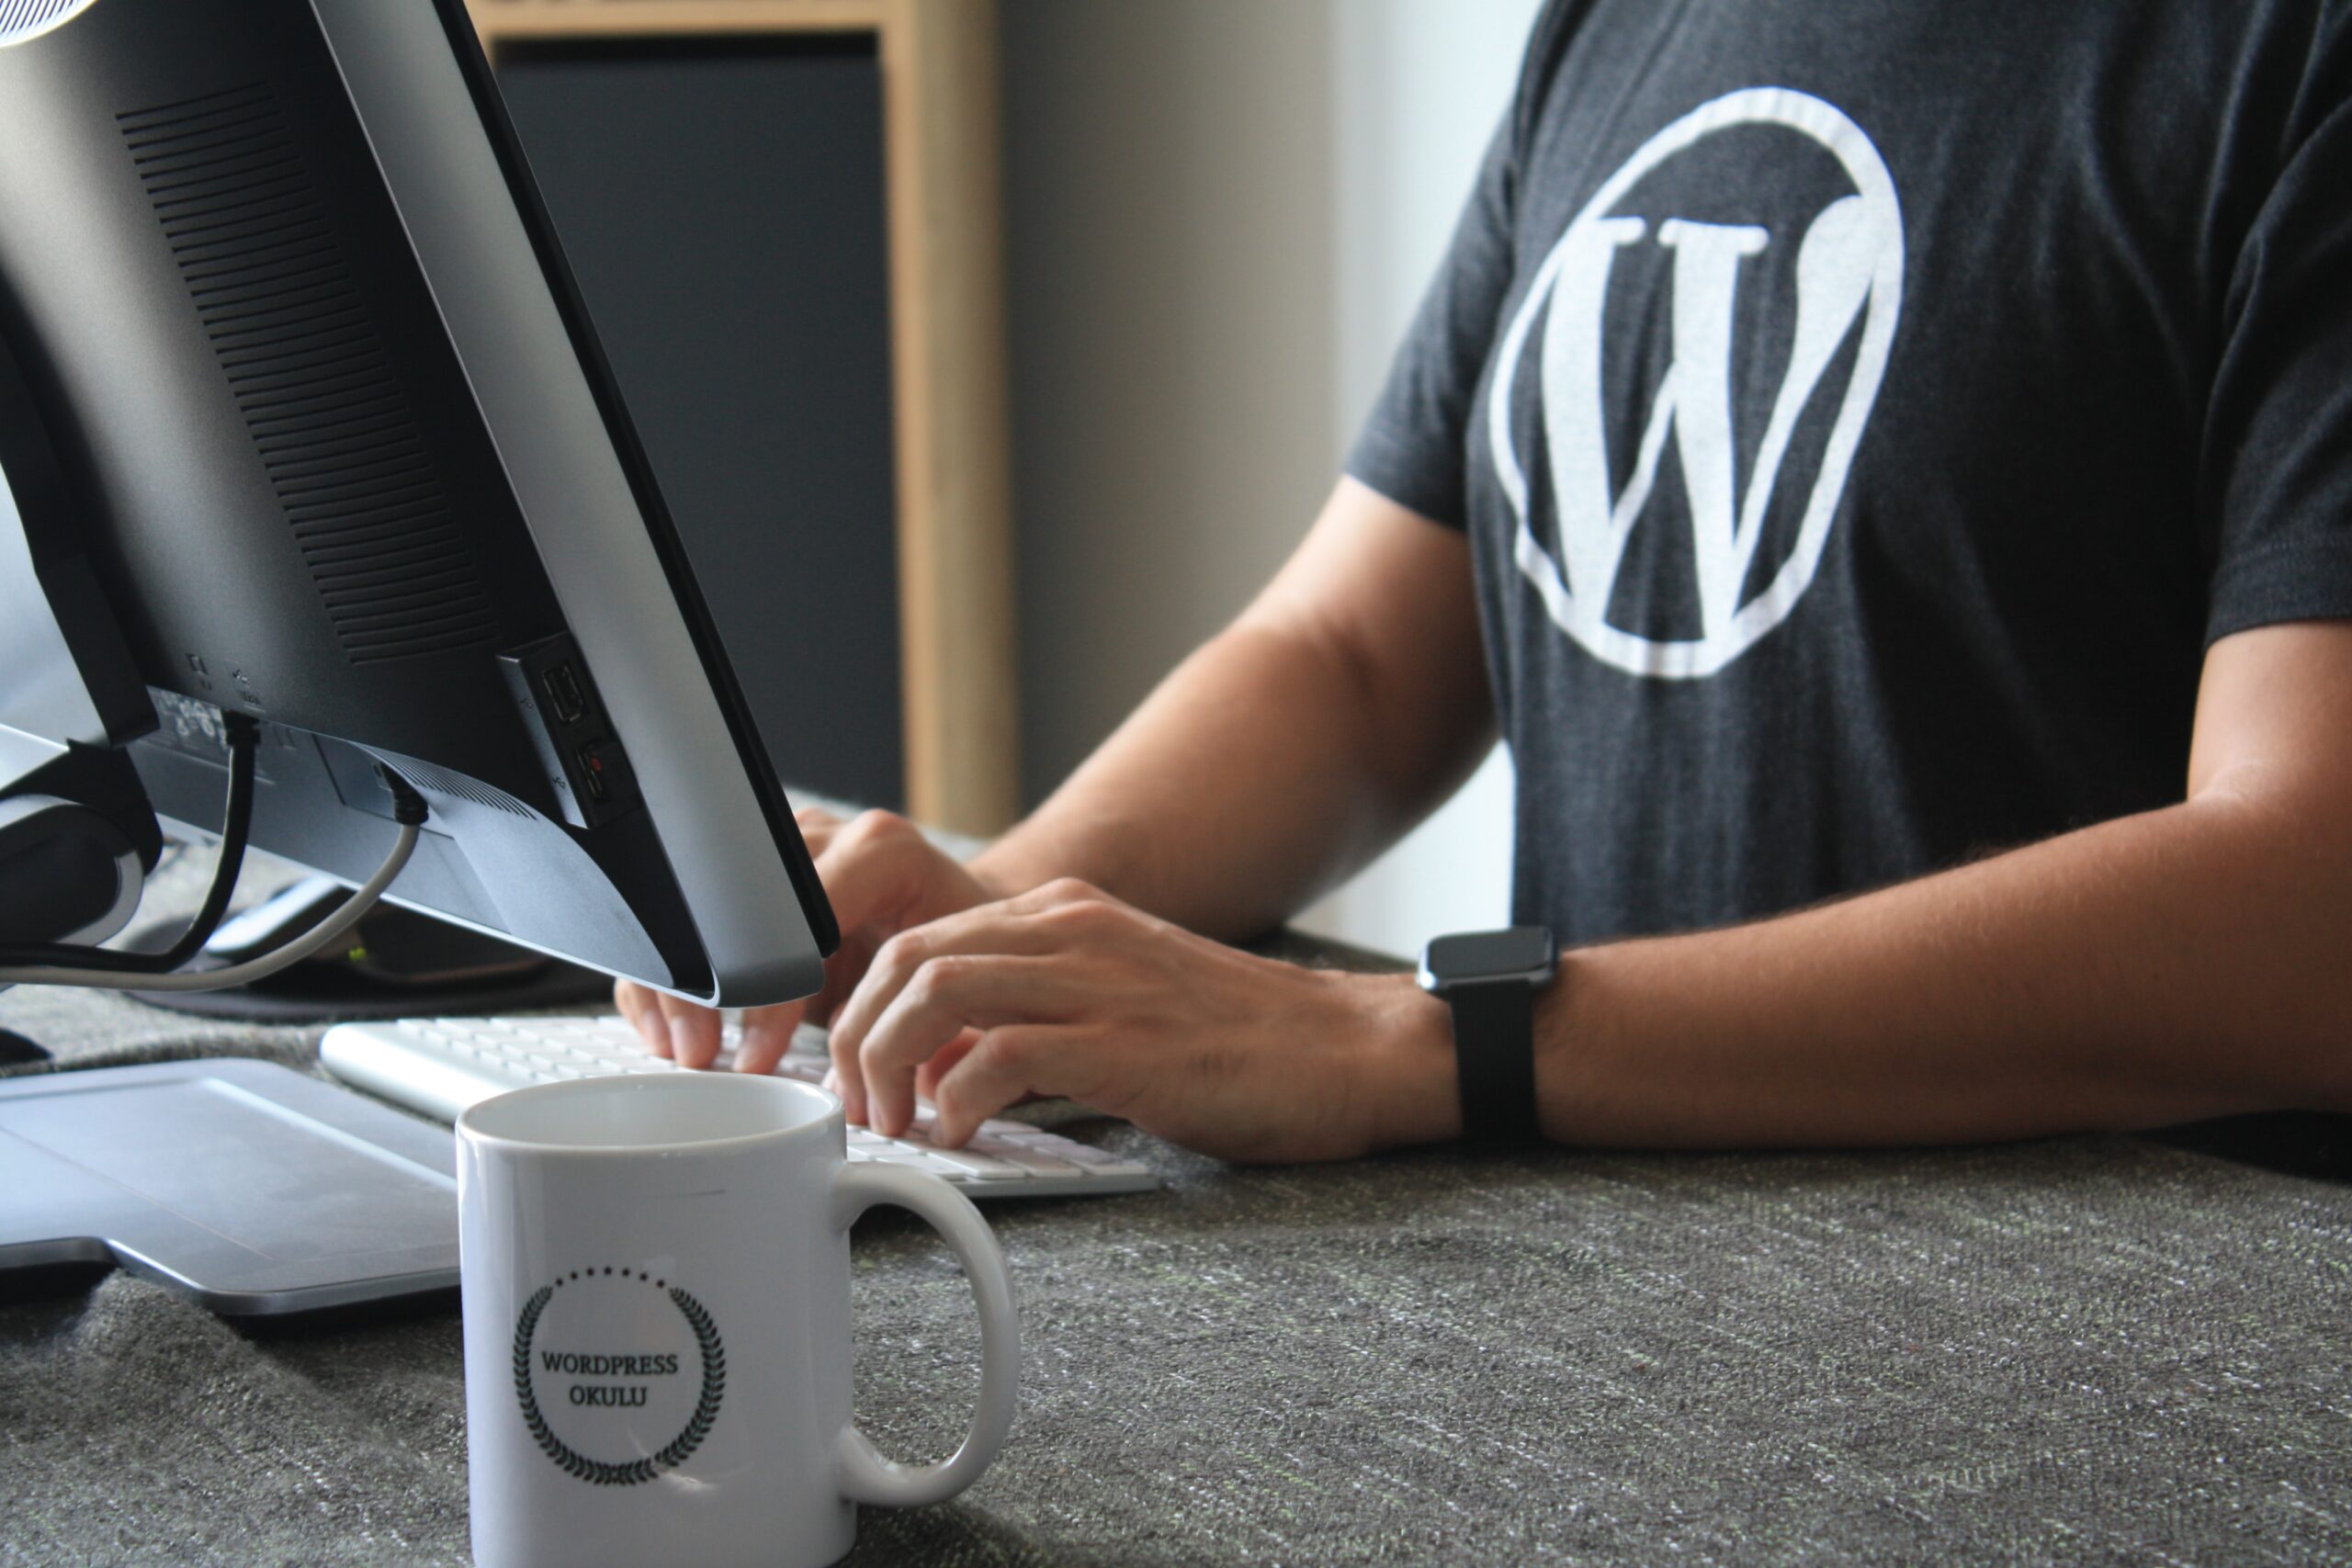 Τι είναι το WordPress και σε τι χρησιμεύει